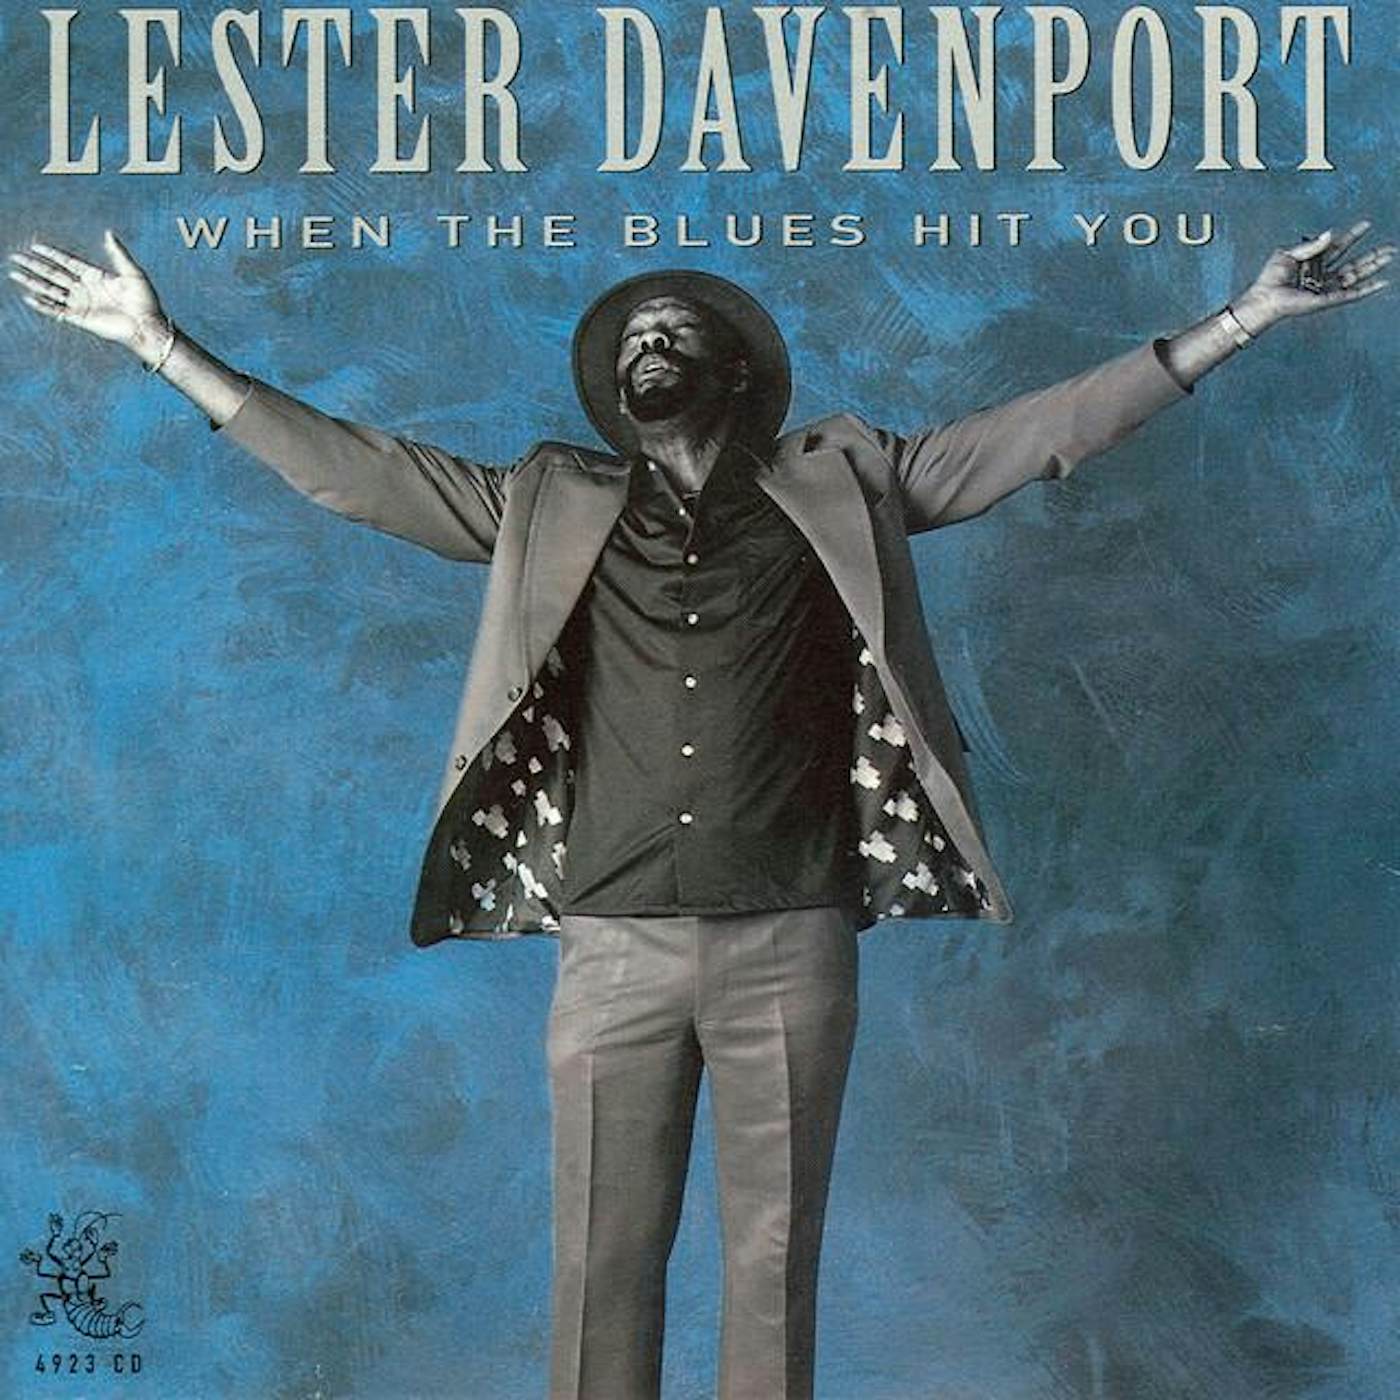 Lester Davenport